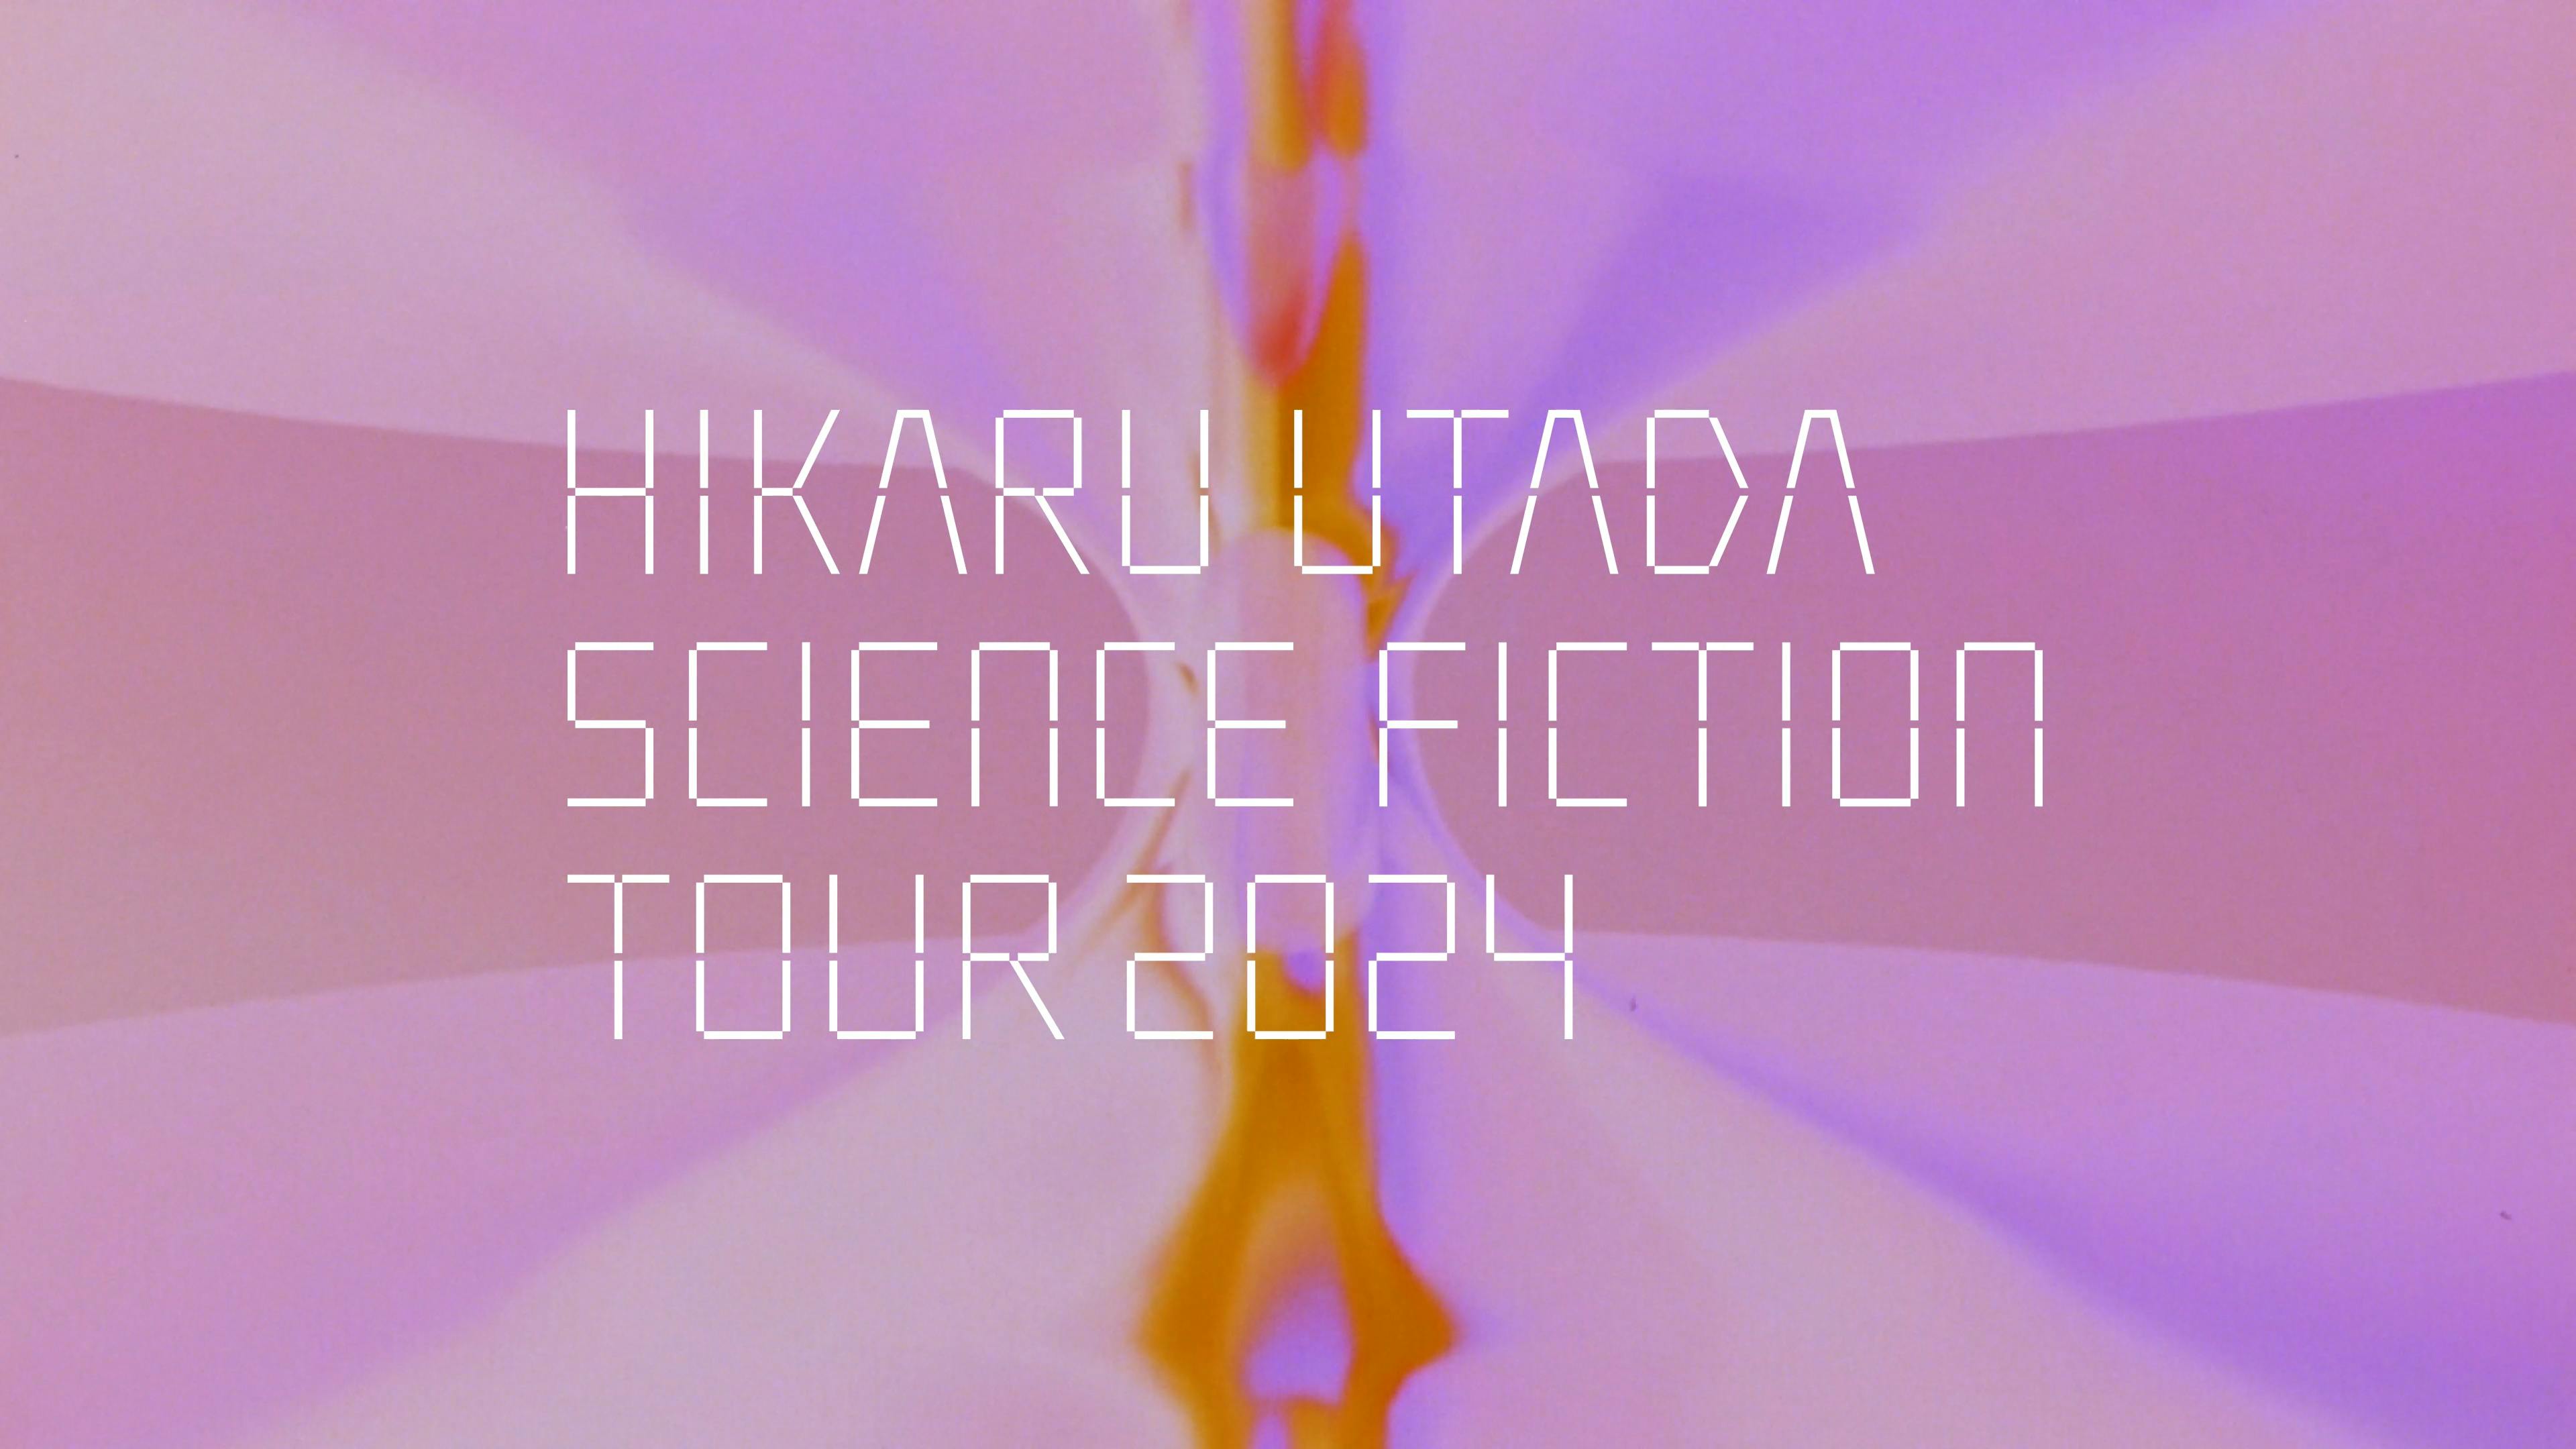 『HIKARU UTADA SCIENCE FICTION TOUR 2024』 ベストアルバム「SCIENCE FICTION」購入者対象としたツアーチケット抽選販売受付の実施のサムネイル